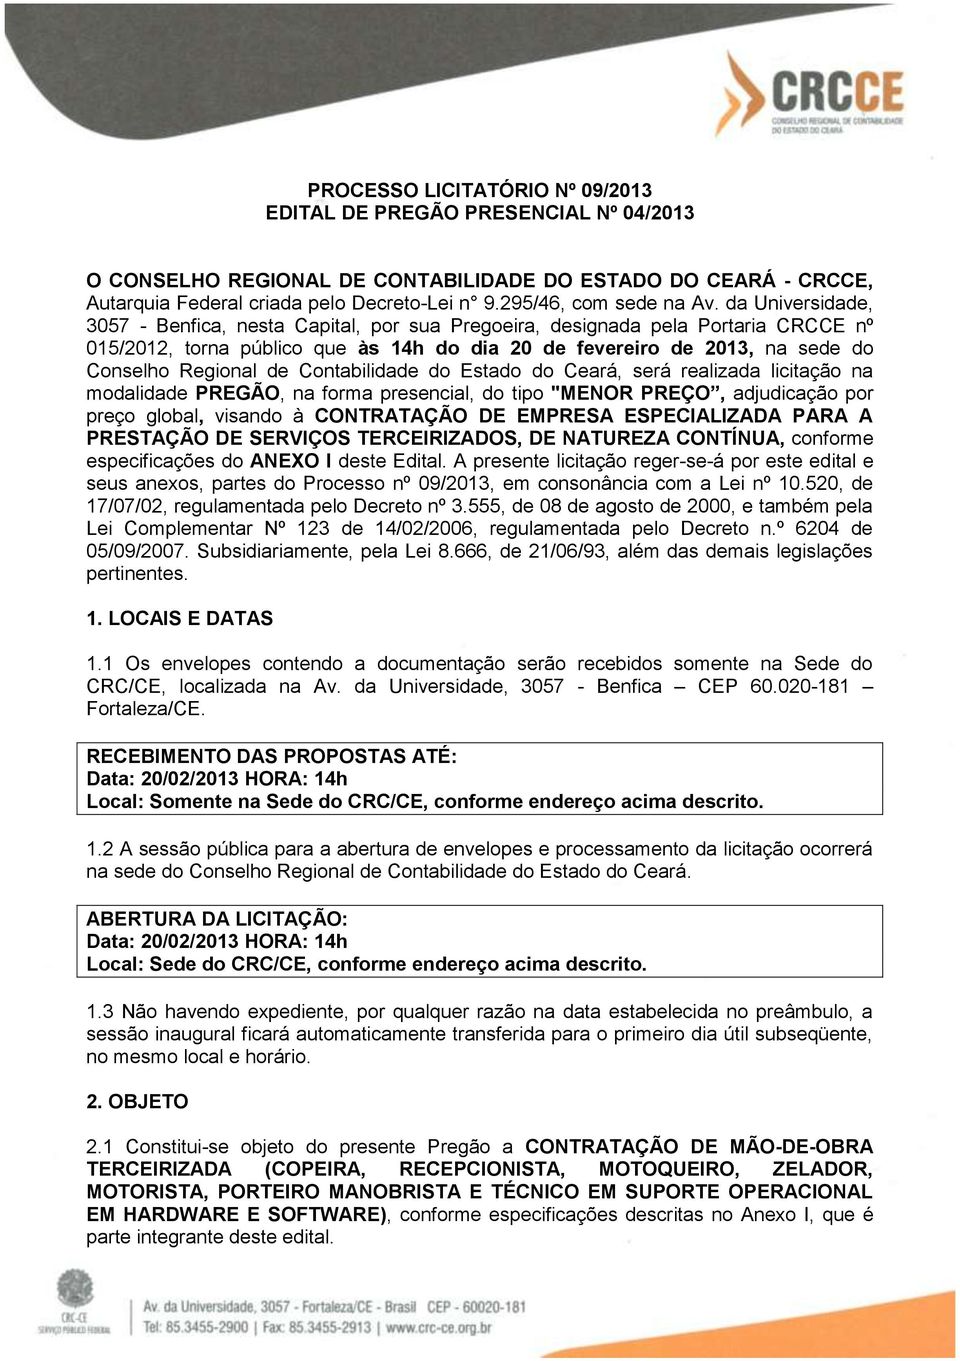 da Universidade, 3057 - Benfica, nesta Capital, por sua Pregoeira, designada pela Portaria CRCCE nº 015/2012, torna público que às 14h do dia 20 de fevereiro de 2013, na sede do Conselho Regional de